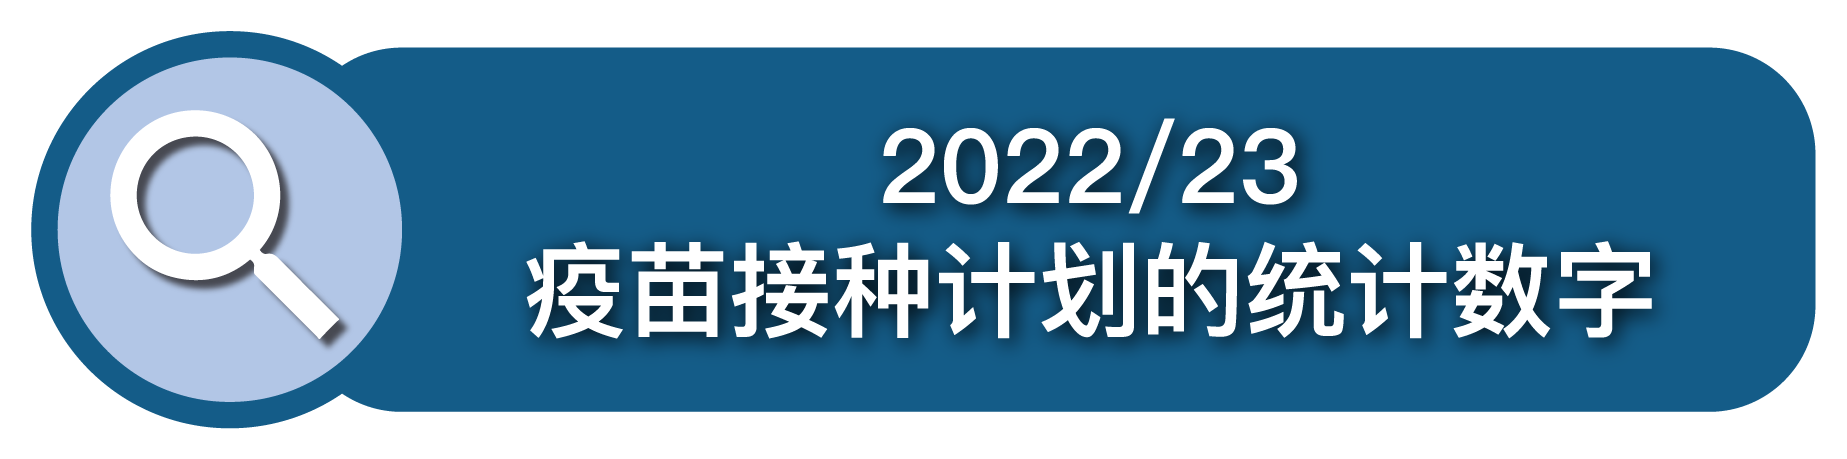 2022/23 疫苗接种计划的统计数字